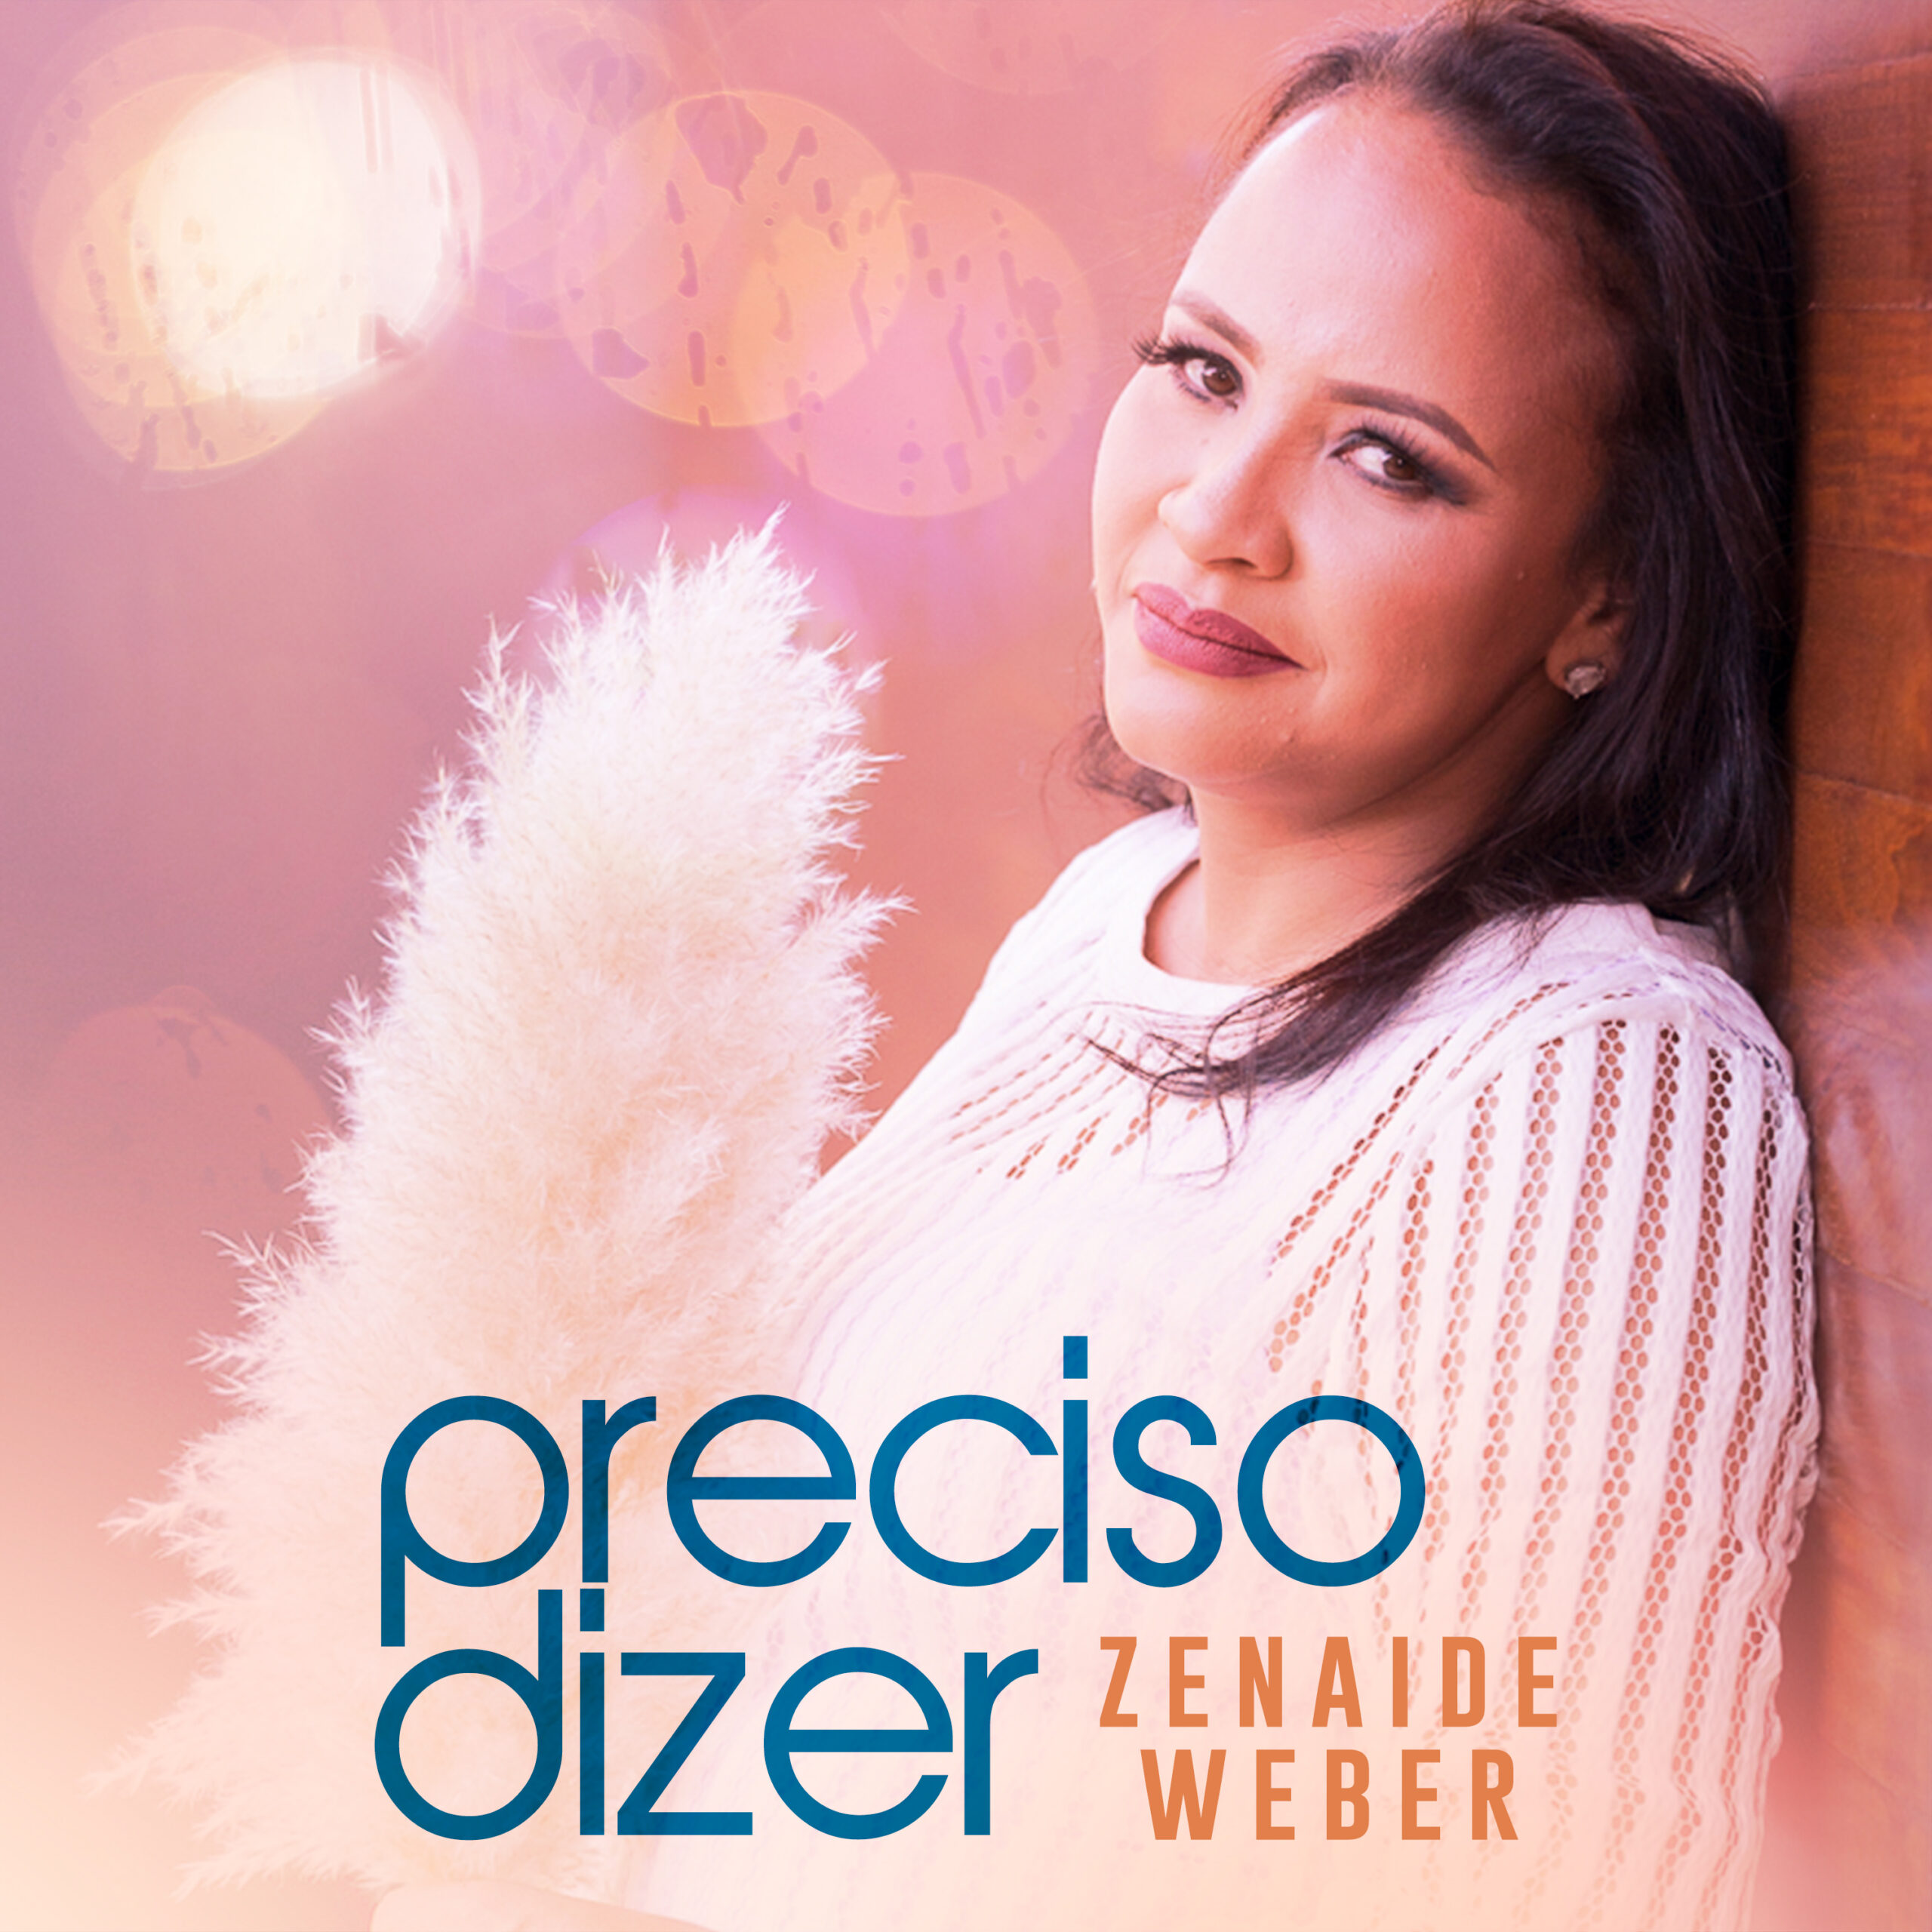 Zenaide Weber apresenta sua versão da canção “Preciso Dizer” para o streaming